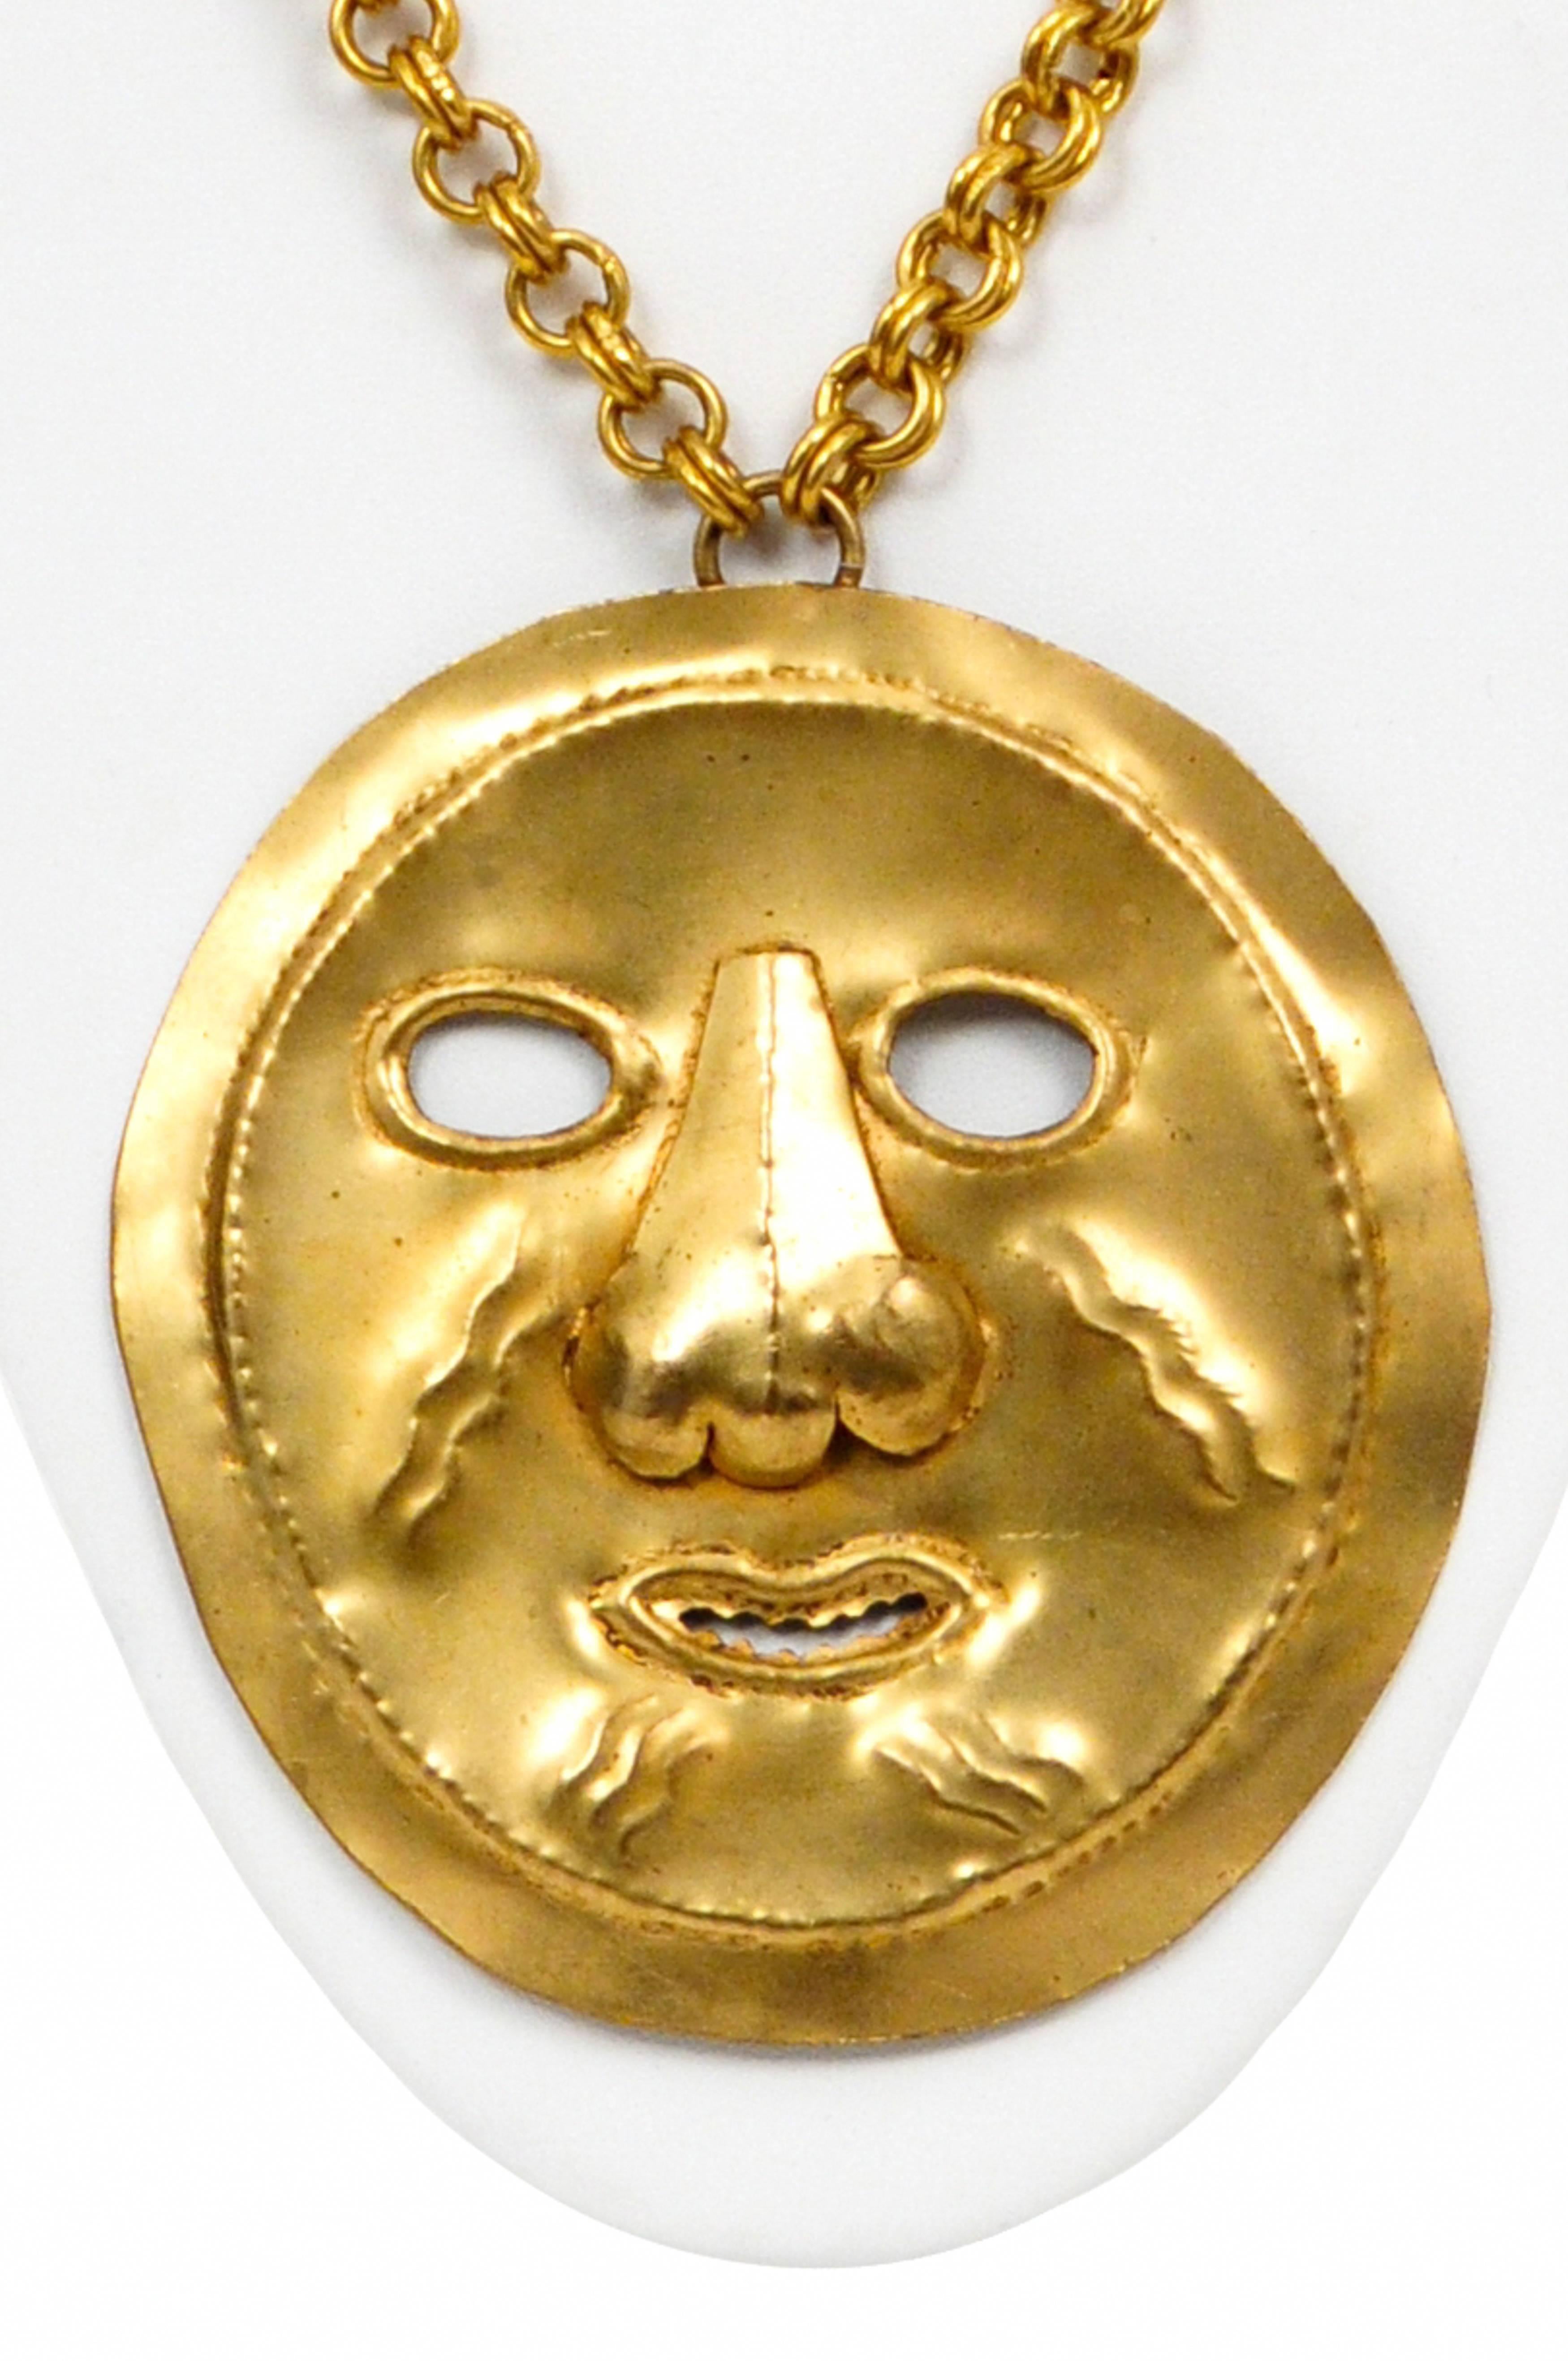 Collier Vintage Yves Saint Laurent en métal doré avec un grand pendentif masque en métal martelé doré reflétant les masques funéraires traditionnels péruviens, suspendu à une lourde chaîne en métal doré. Extrêmement rare, le pendentif semble avoir